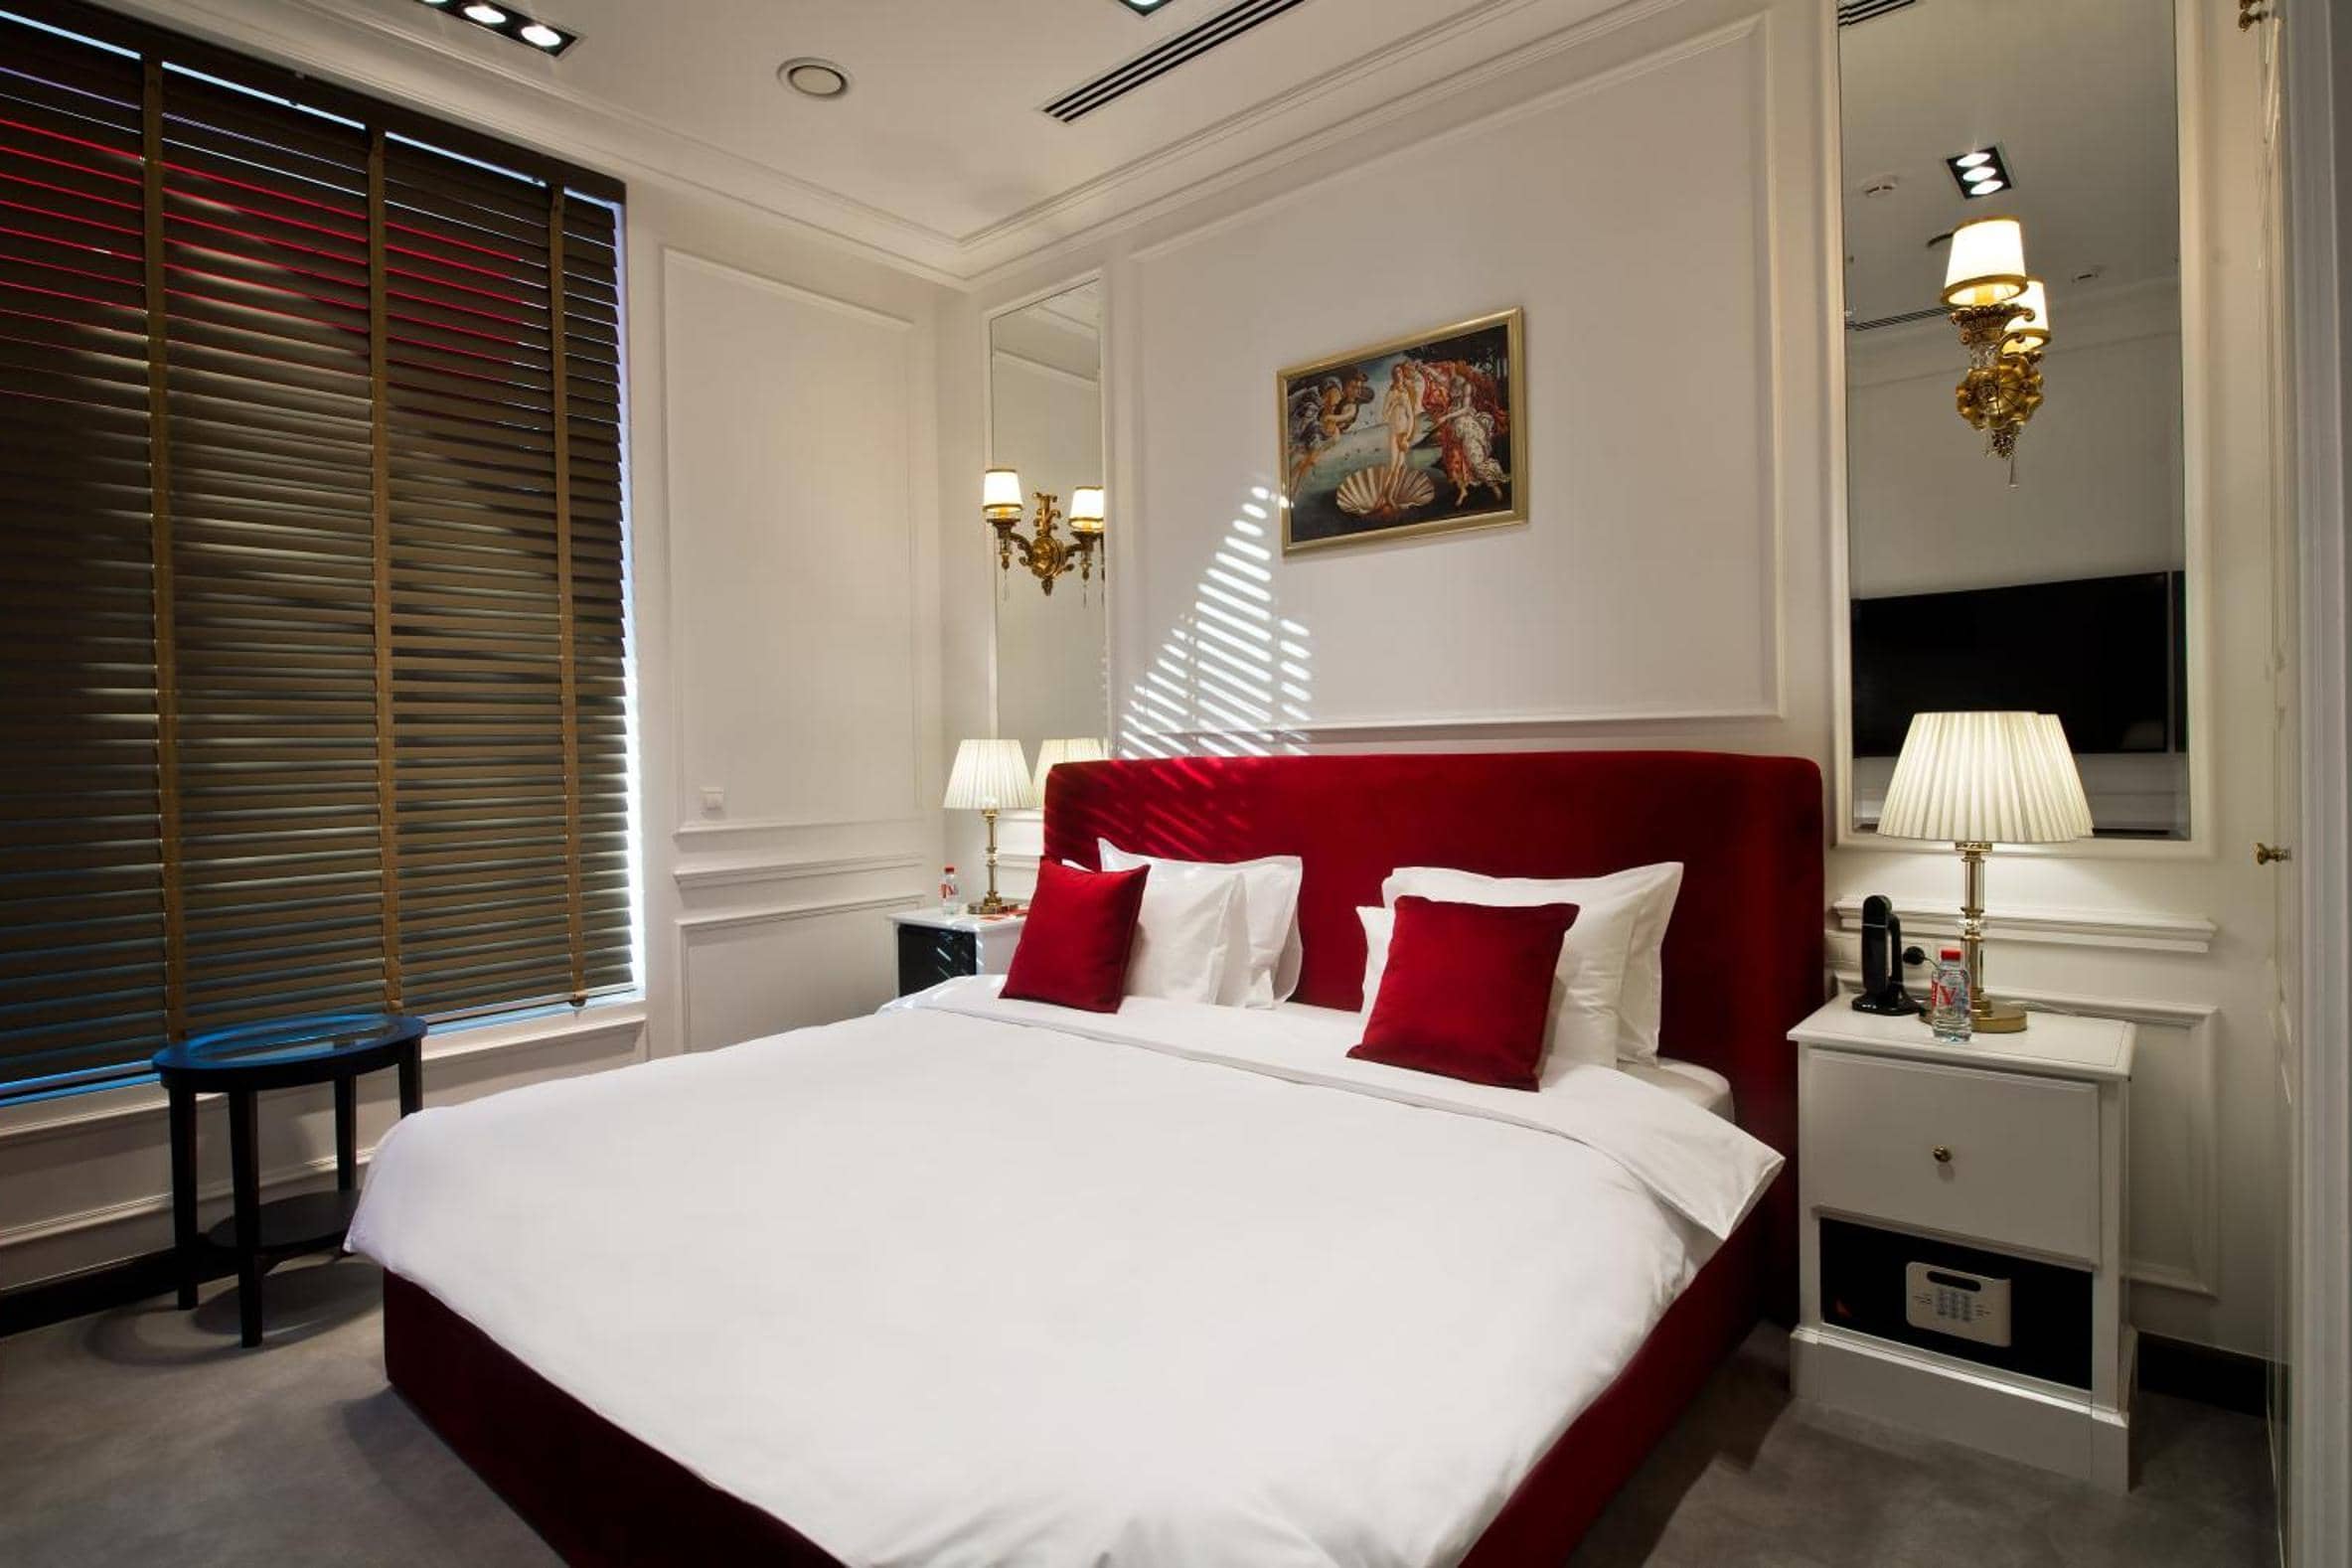 Кровать с красными подушками.